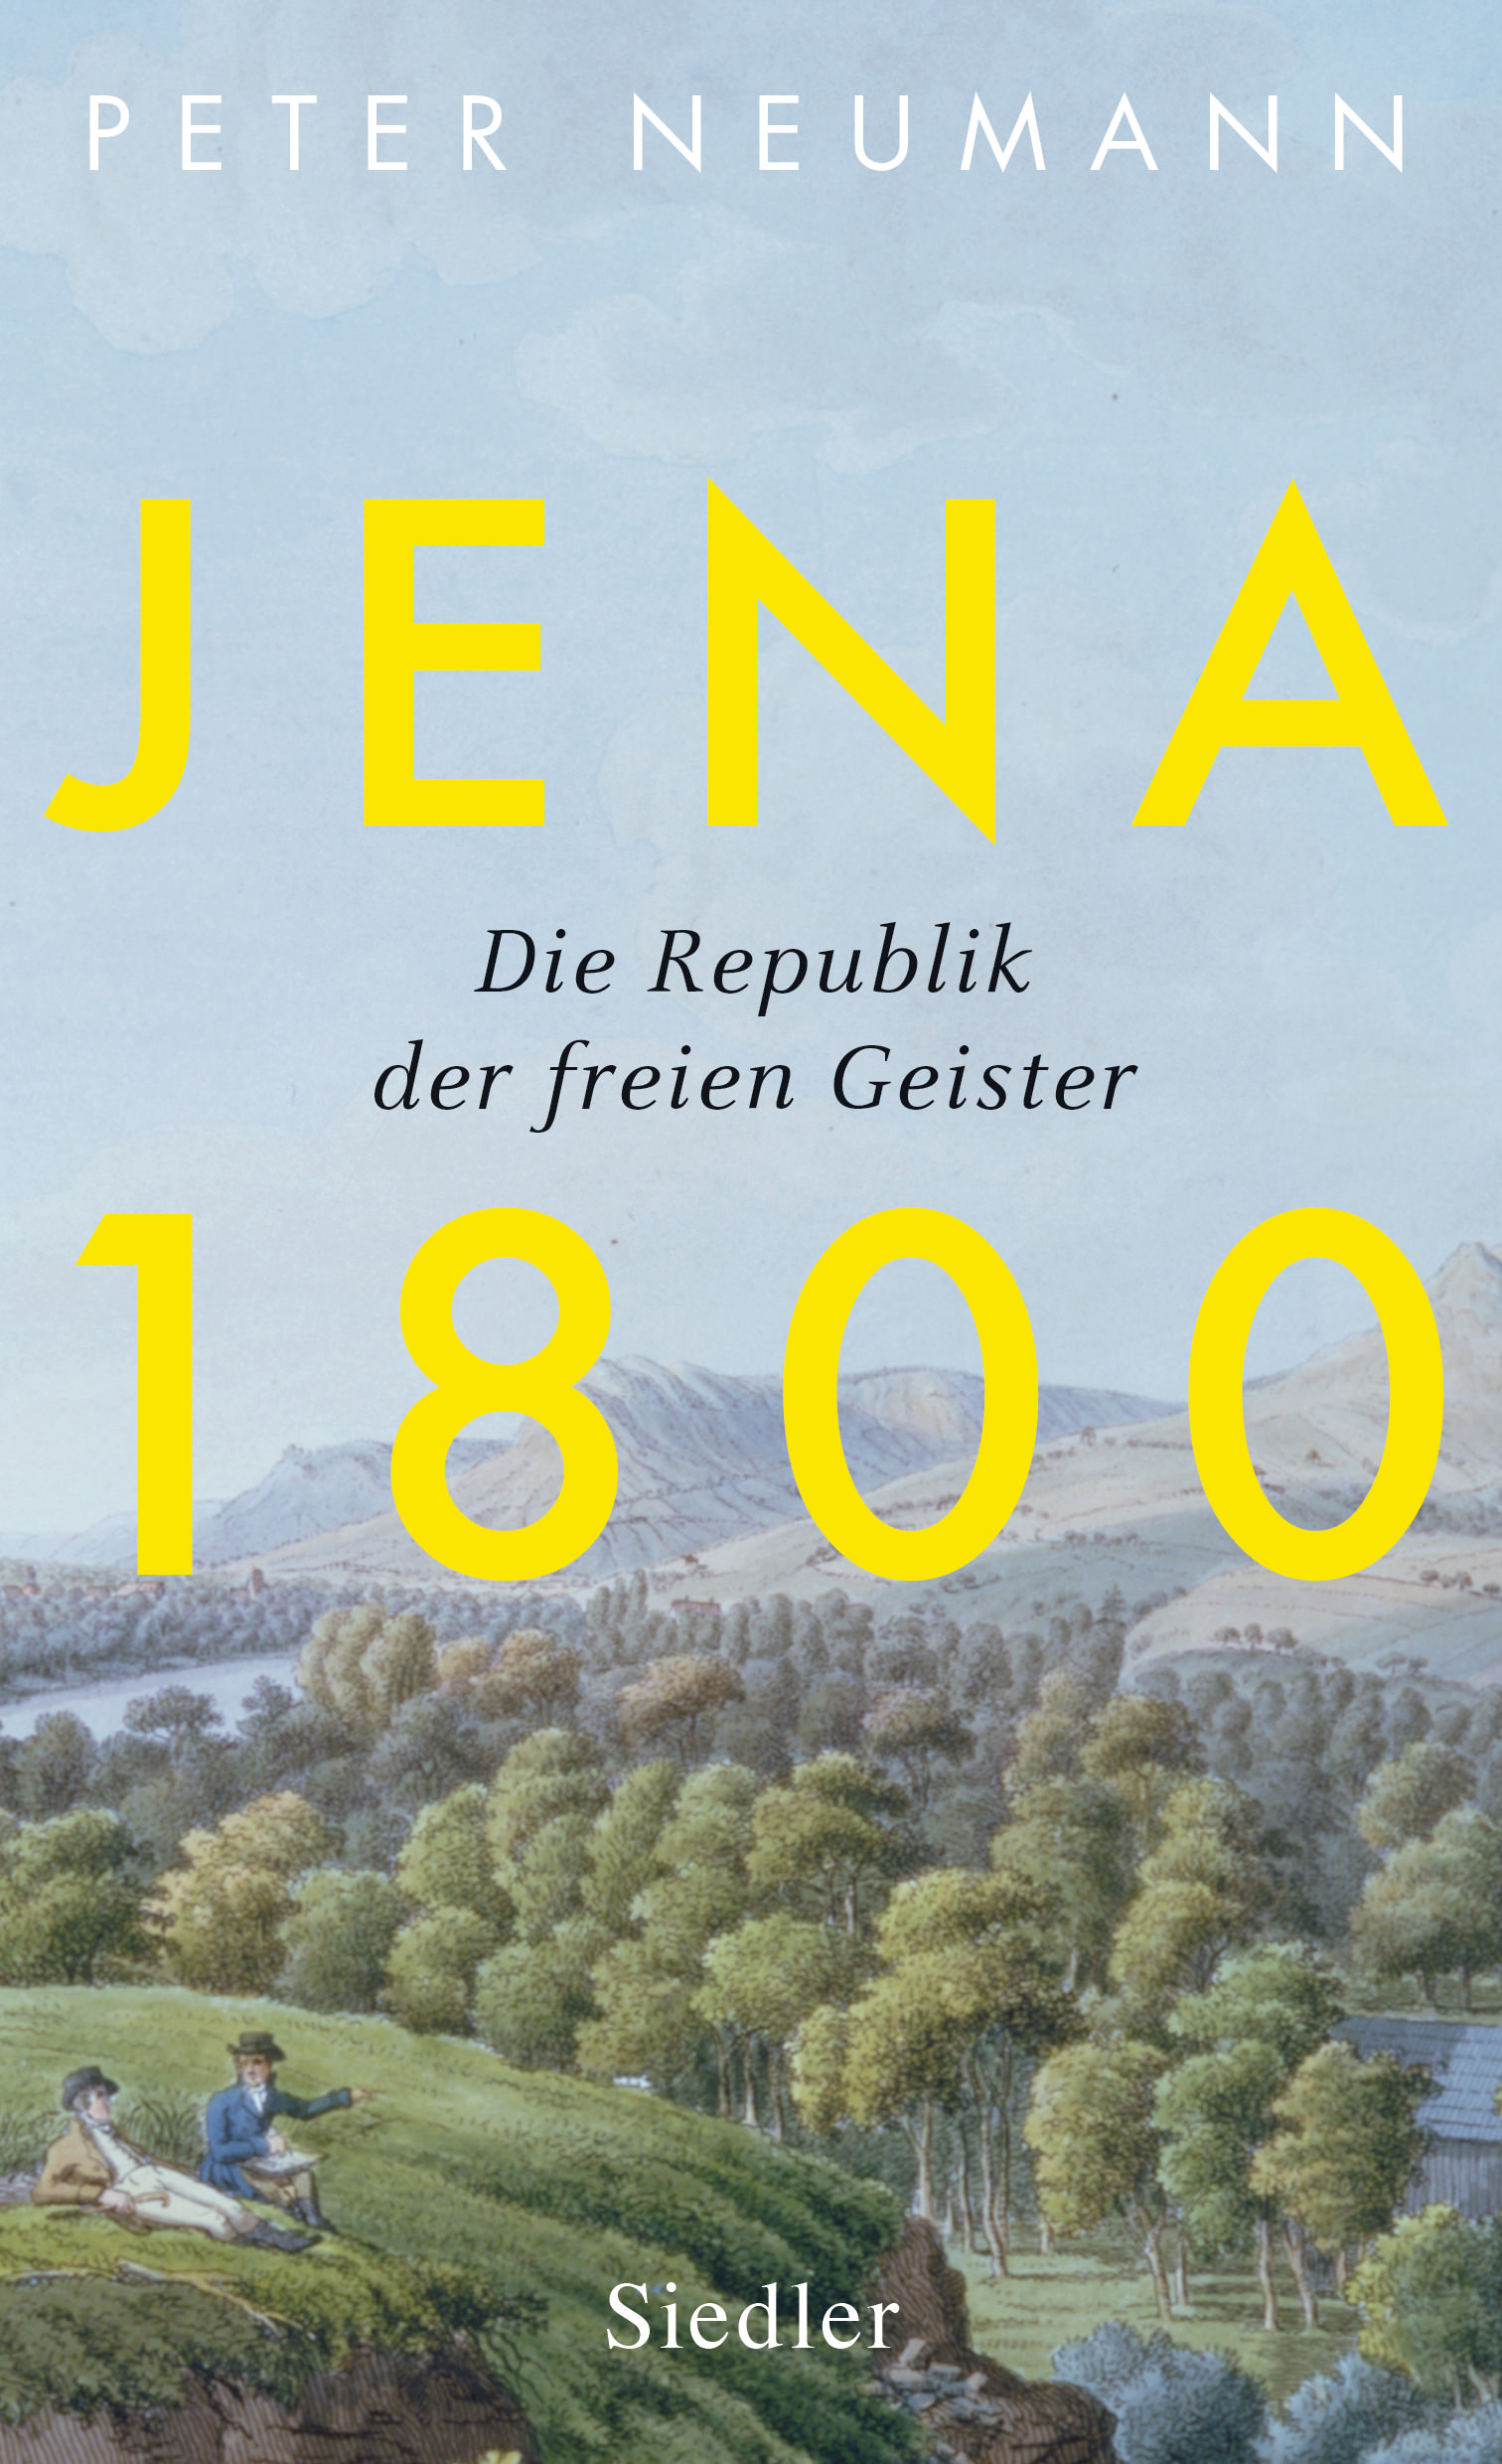 Buchcover: Peter Neumann: Jena 1800